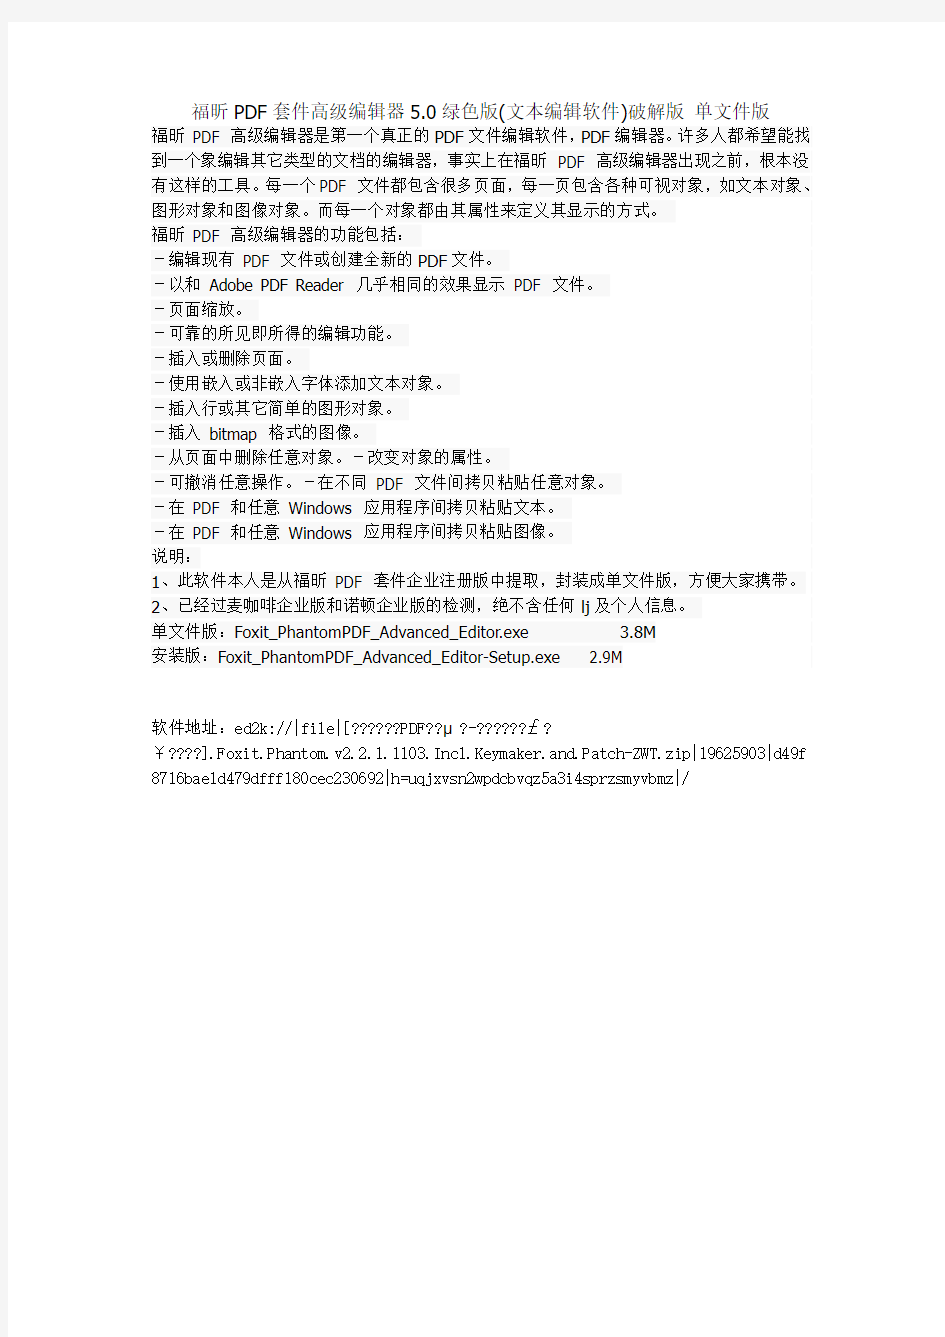 福昕PDF套件高级编辑器5.0绿色版(文本编辑软件)破解版 单文件版